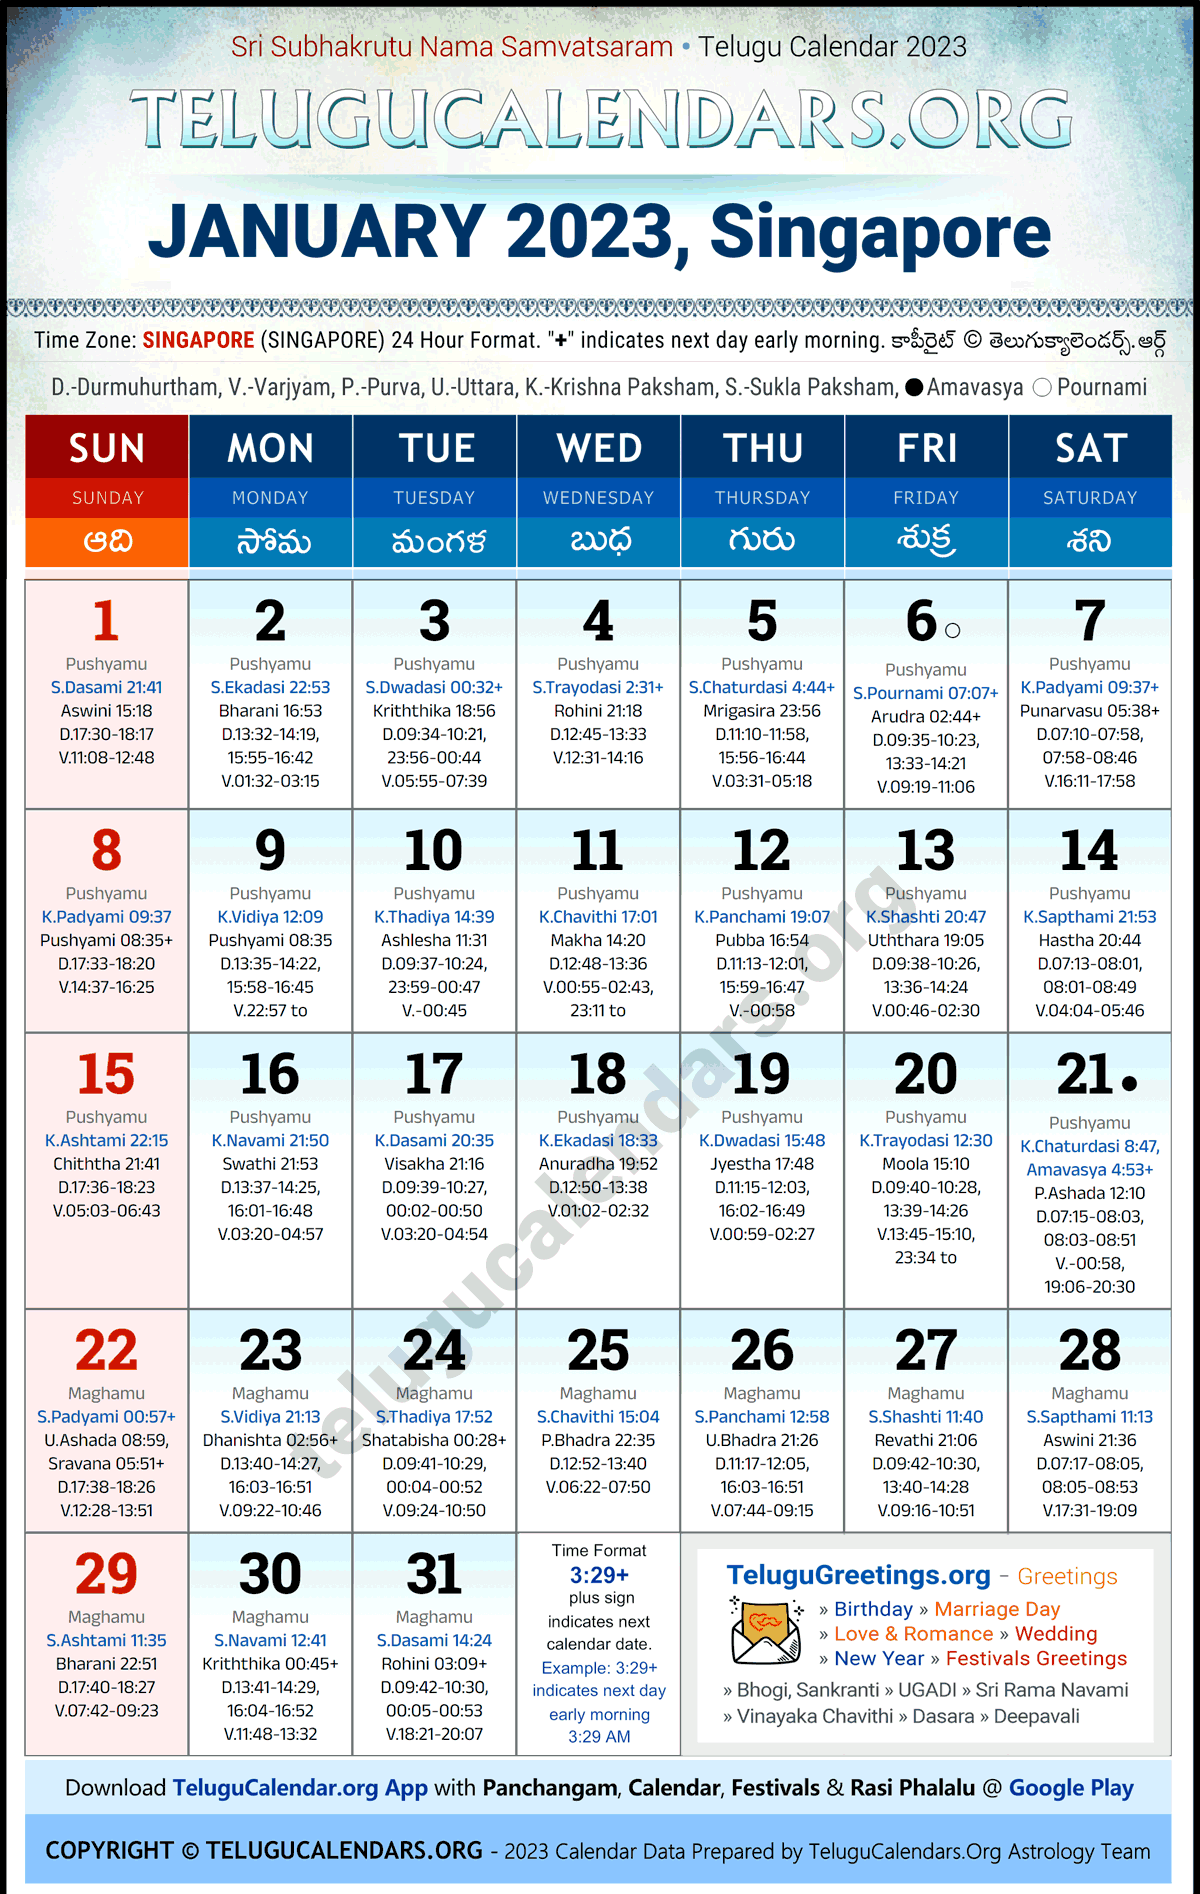 Telugu Calendar 2023 January Festivals for Singapore